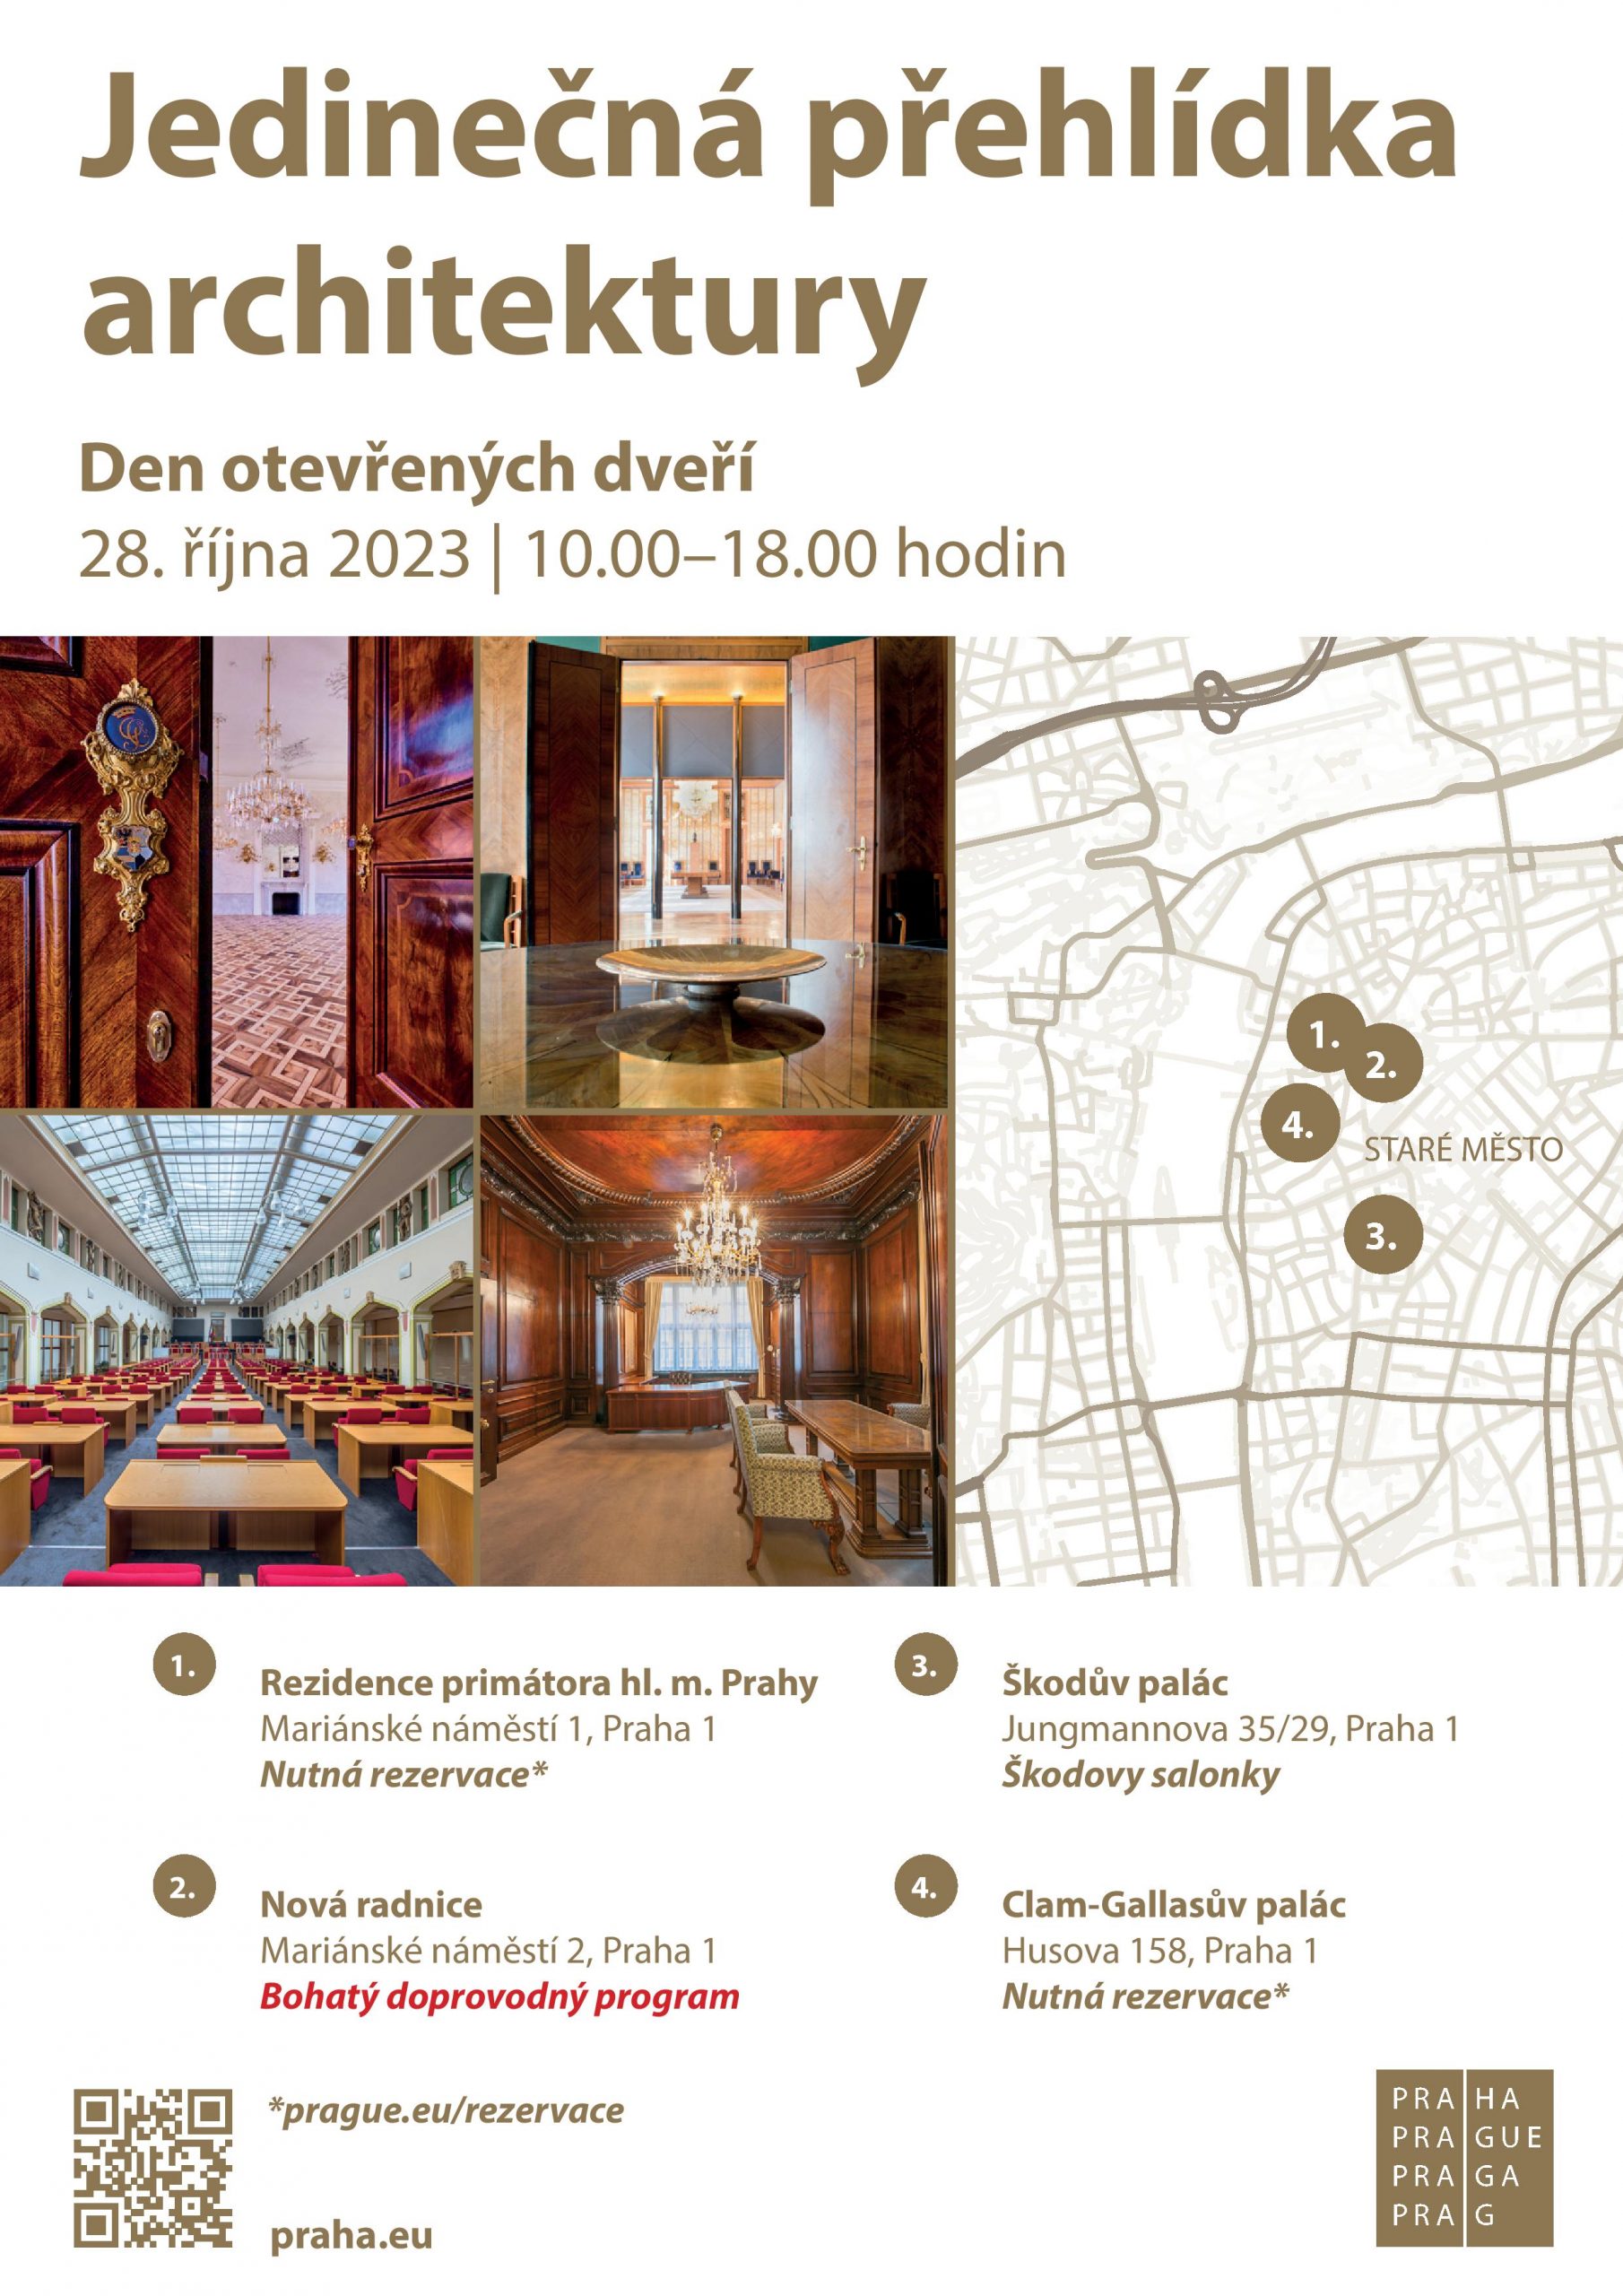 Jedinečná přehlídka architektury - Den otevřených dveří pražského magistrátu